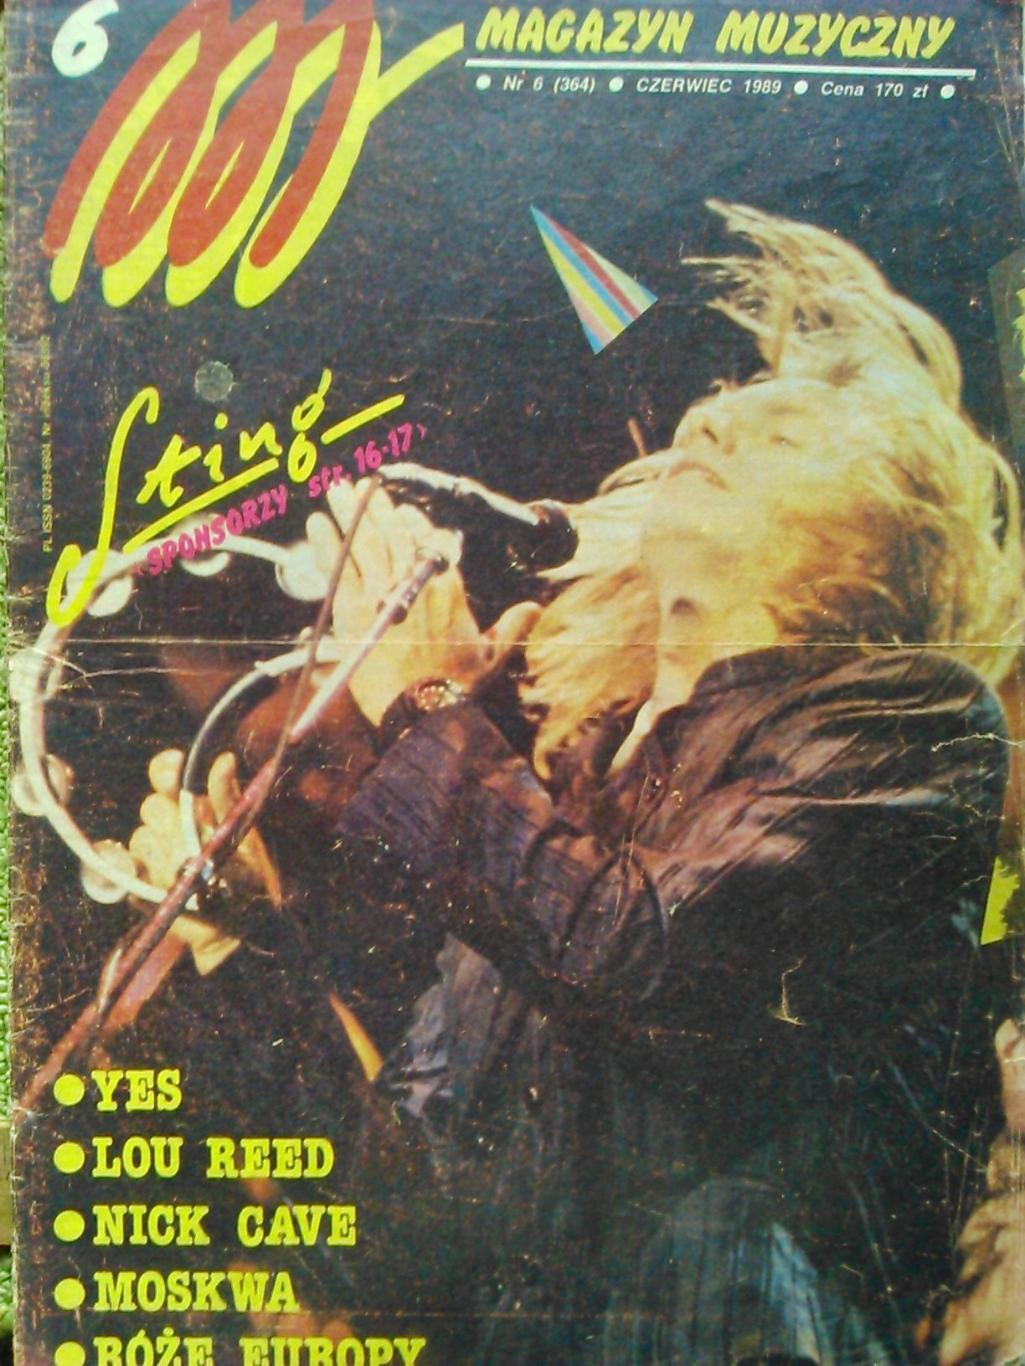 Magazyn muzyczny #6/1989/(Польща). Музыкальный журнал. Стинг.Пинк Флойд,Юрай Хип 5